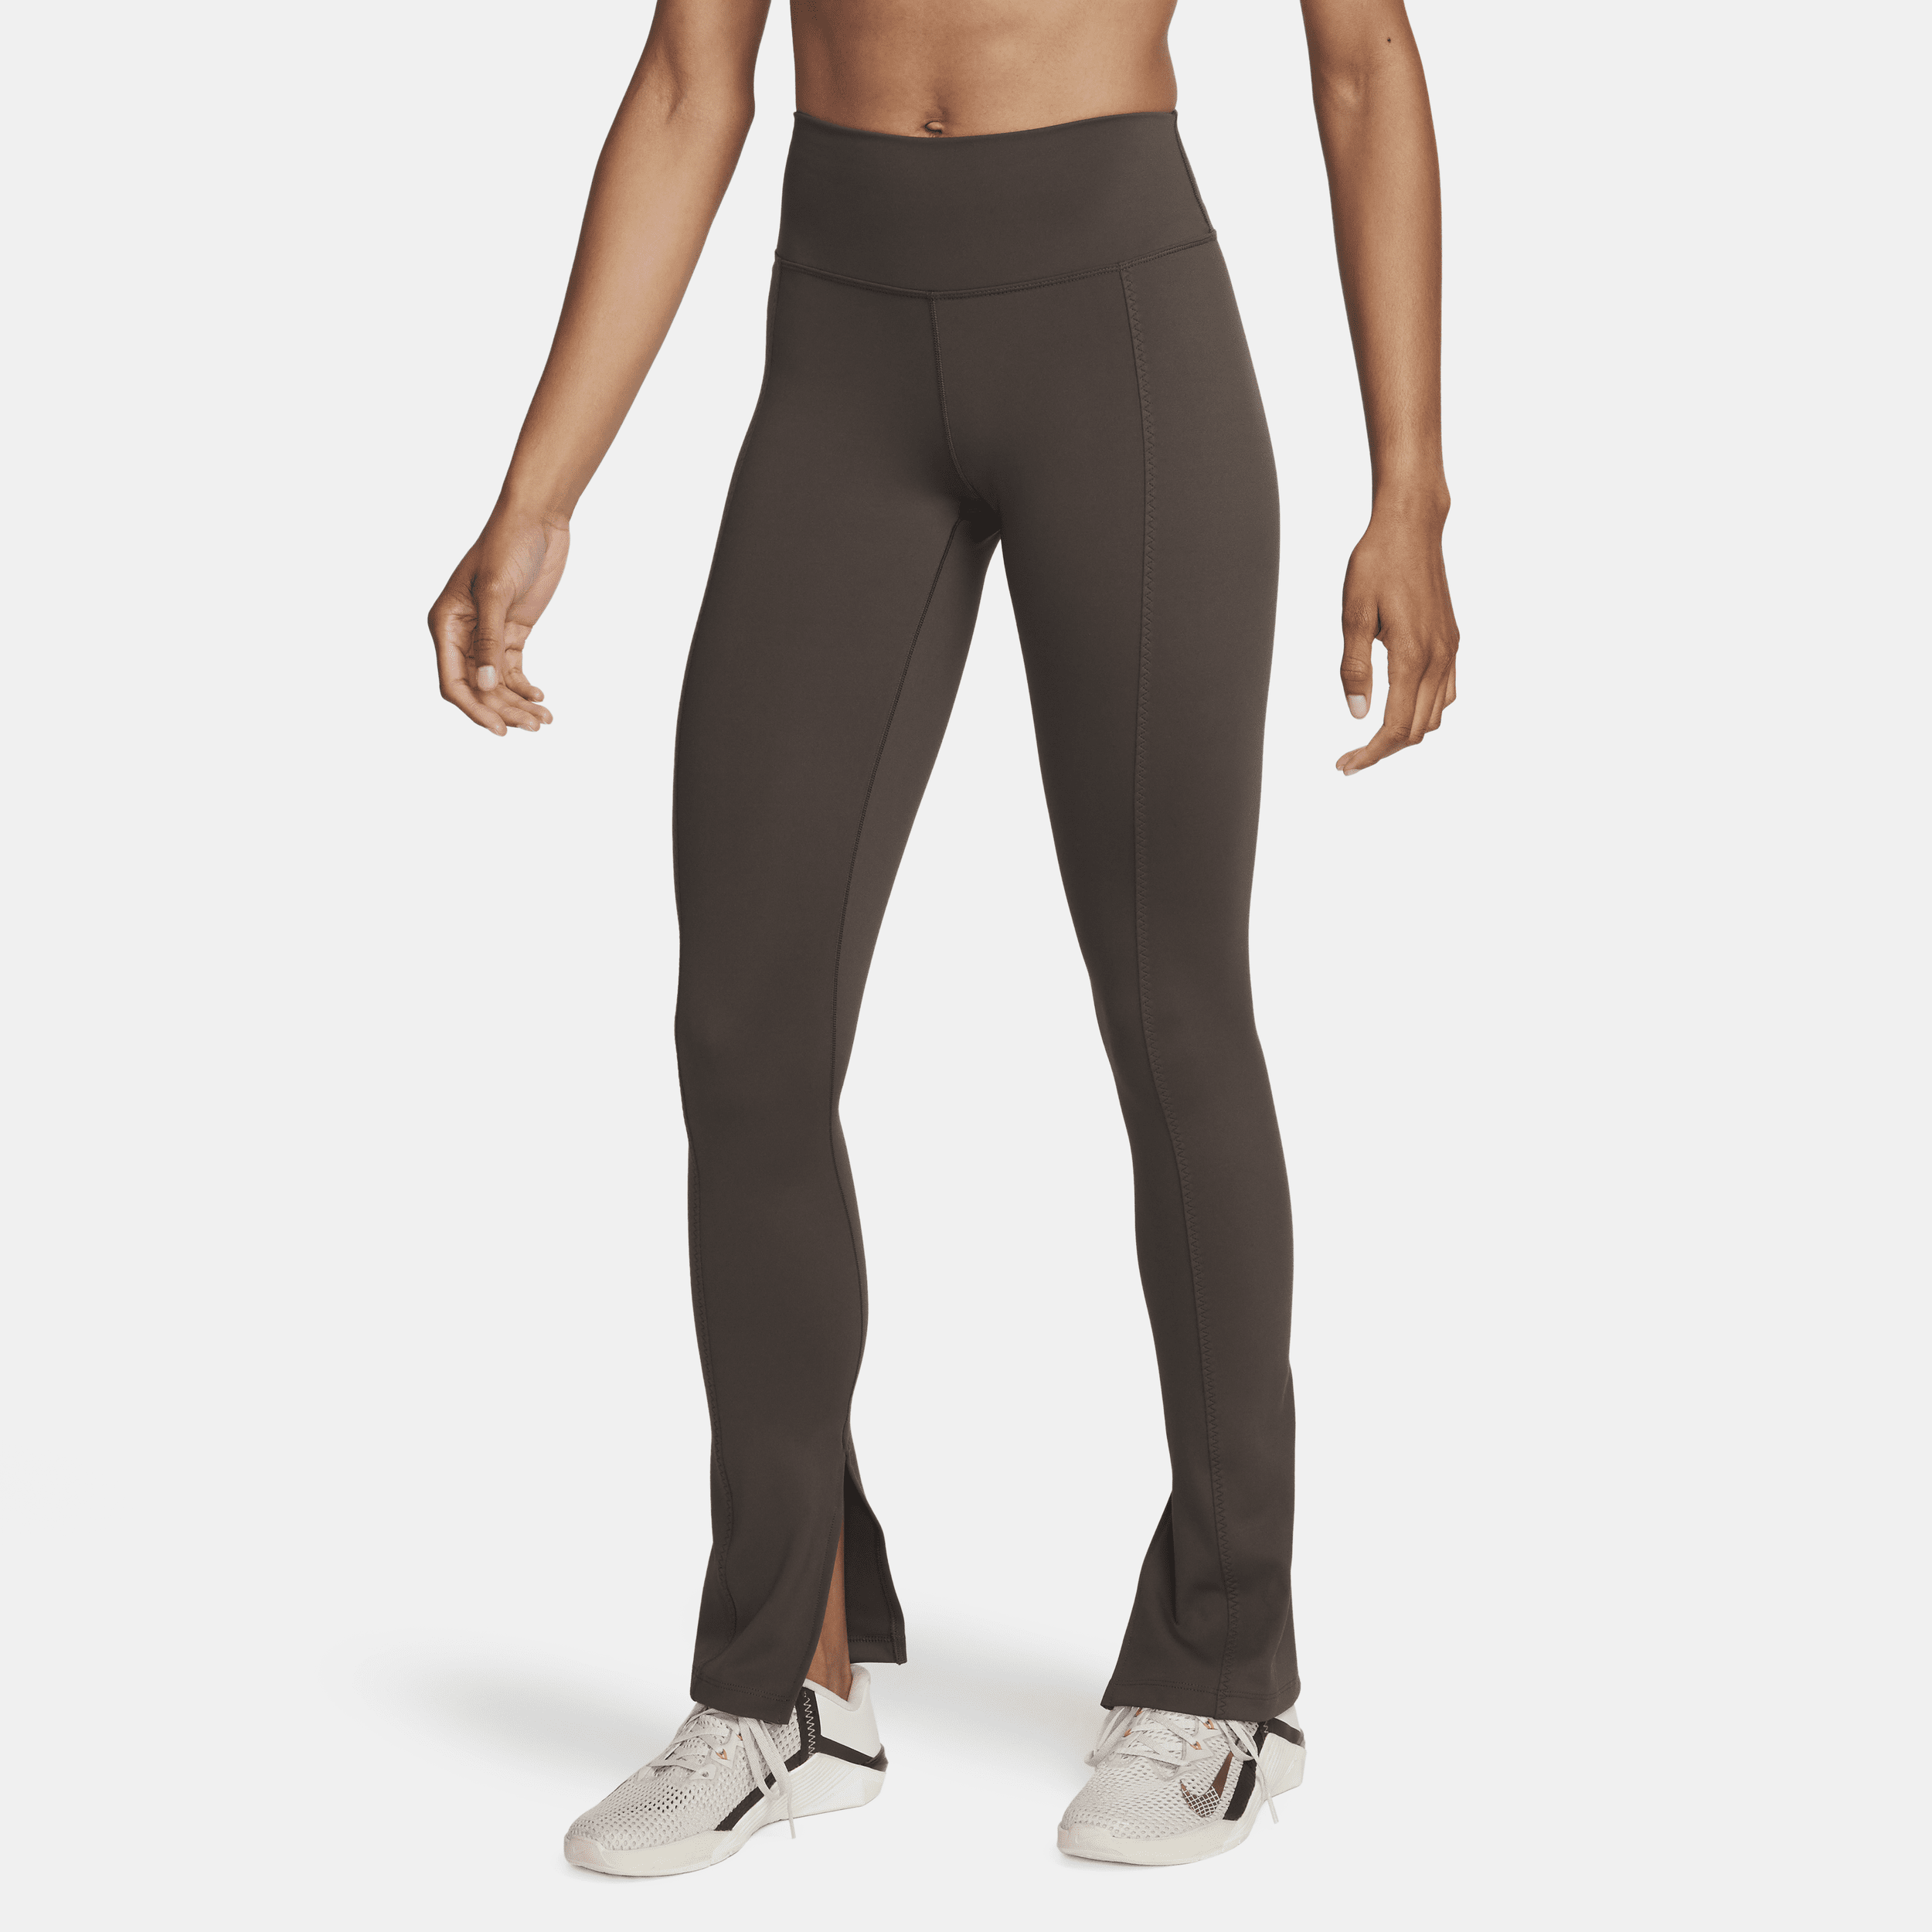 Nike One Leggings de talle alto y longitud completa con dobladillo dividido - Mujer - Marrón